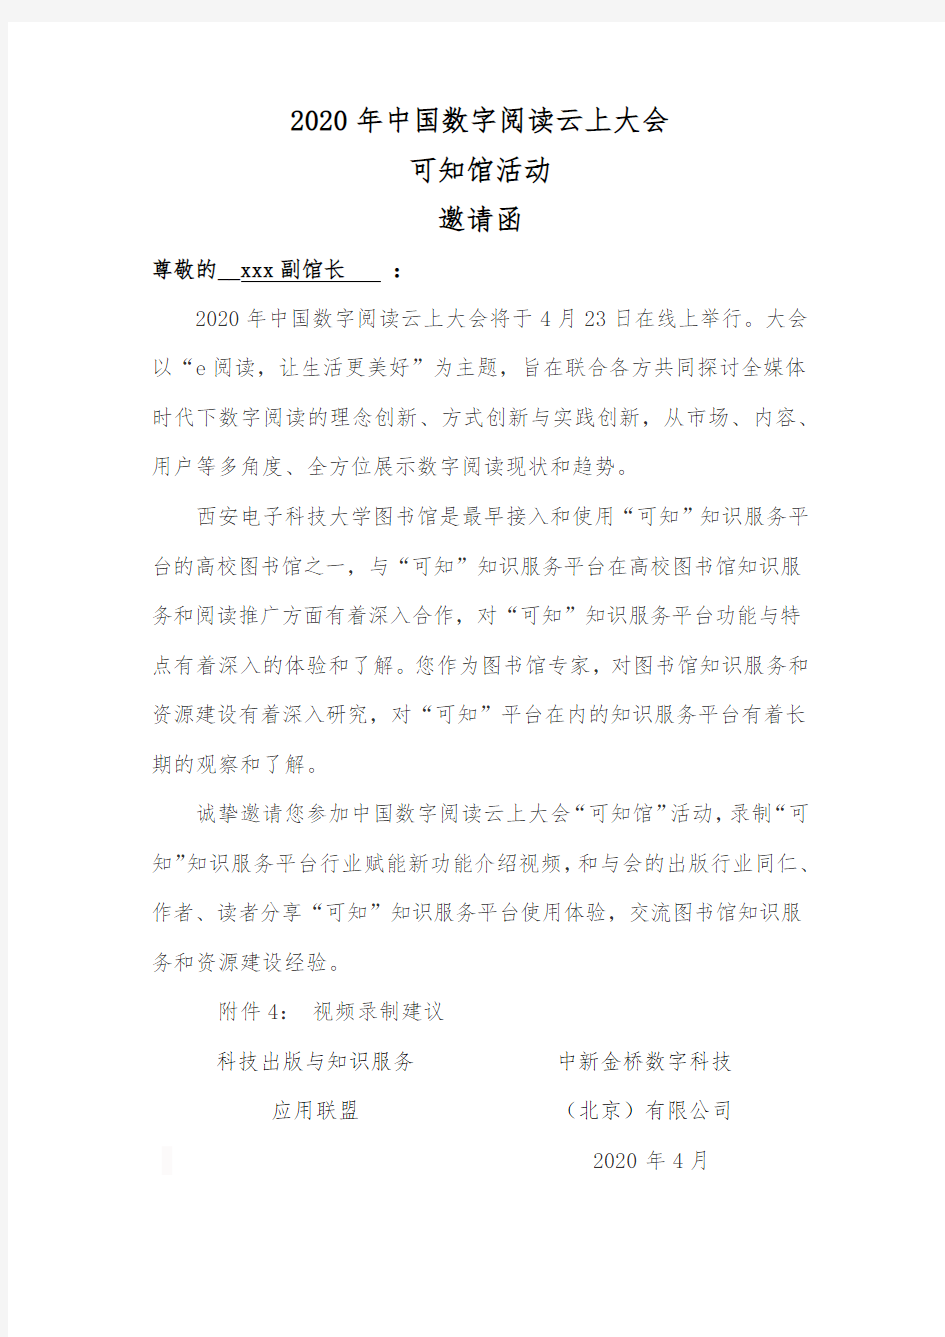 2020年中国数字阅读云上大会可知馆活动邀请函